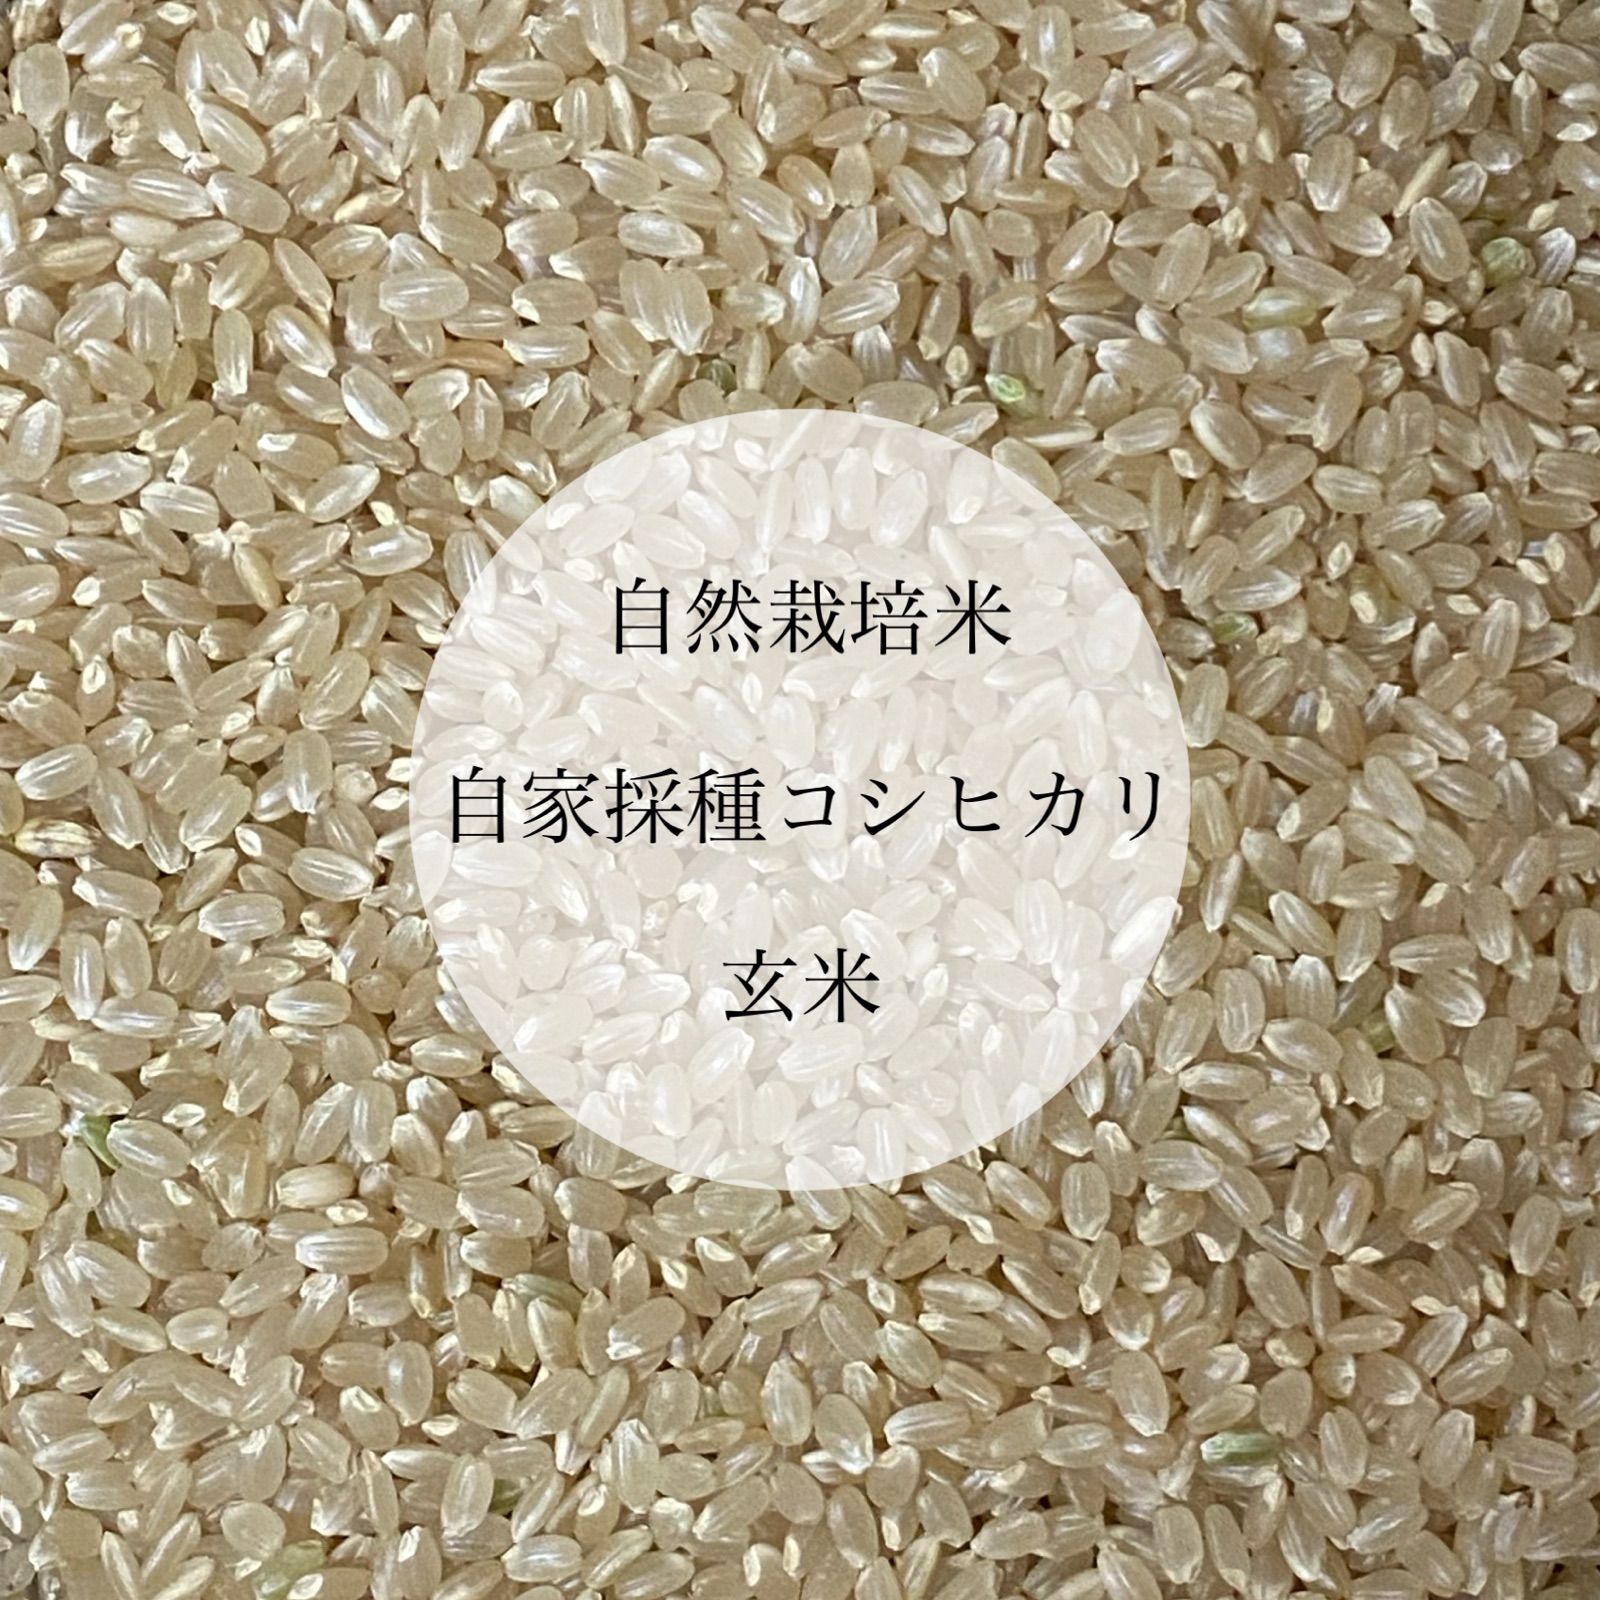 令和4年新米 自然栽培米 精米5kg 農薬不使用・肥料不使用 コシヒカリ